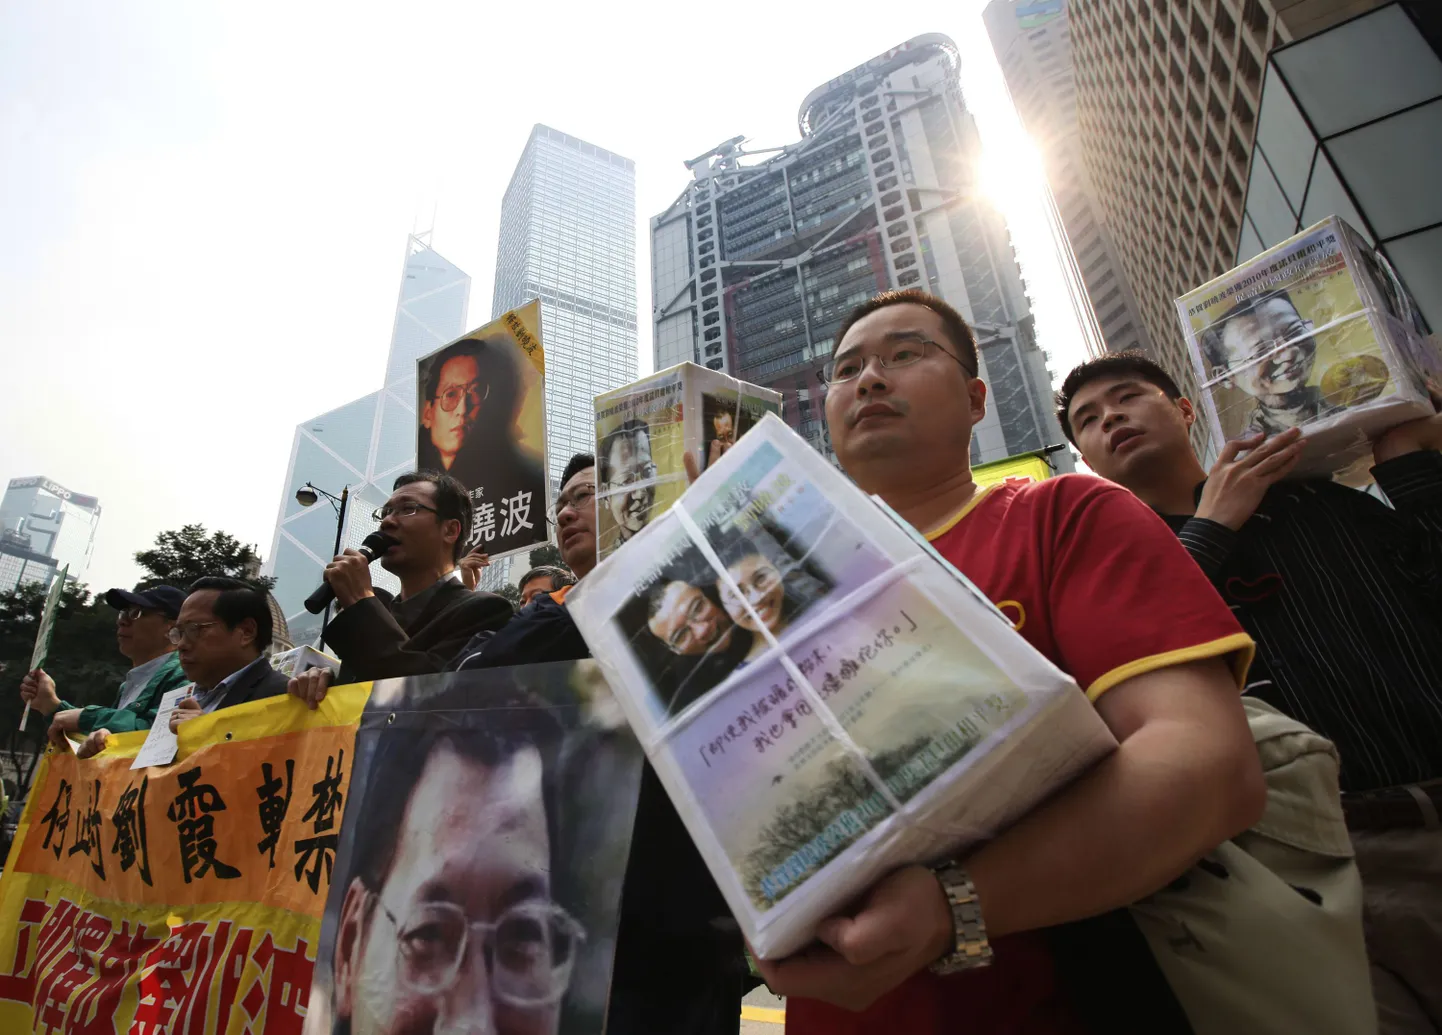 Demokraatiat toetavate jõudude meeleavaldus Hongkongis. Inimesed hoiavad käes kaste Liu Xiaobole mõeldud tervituspostkaartidega.